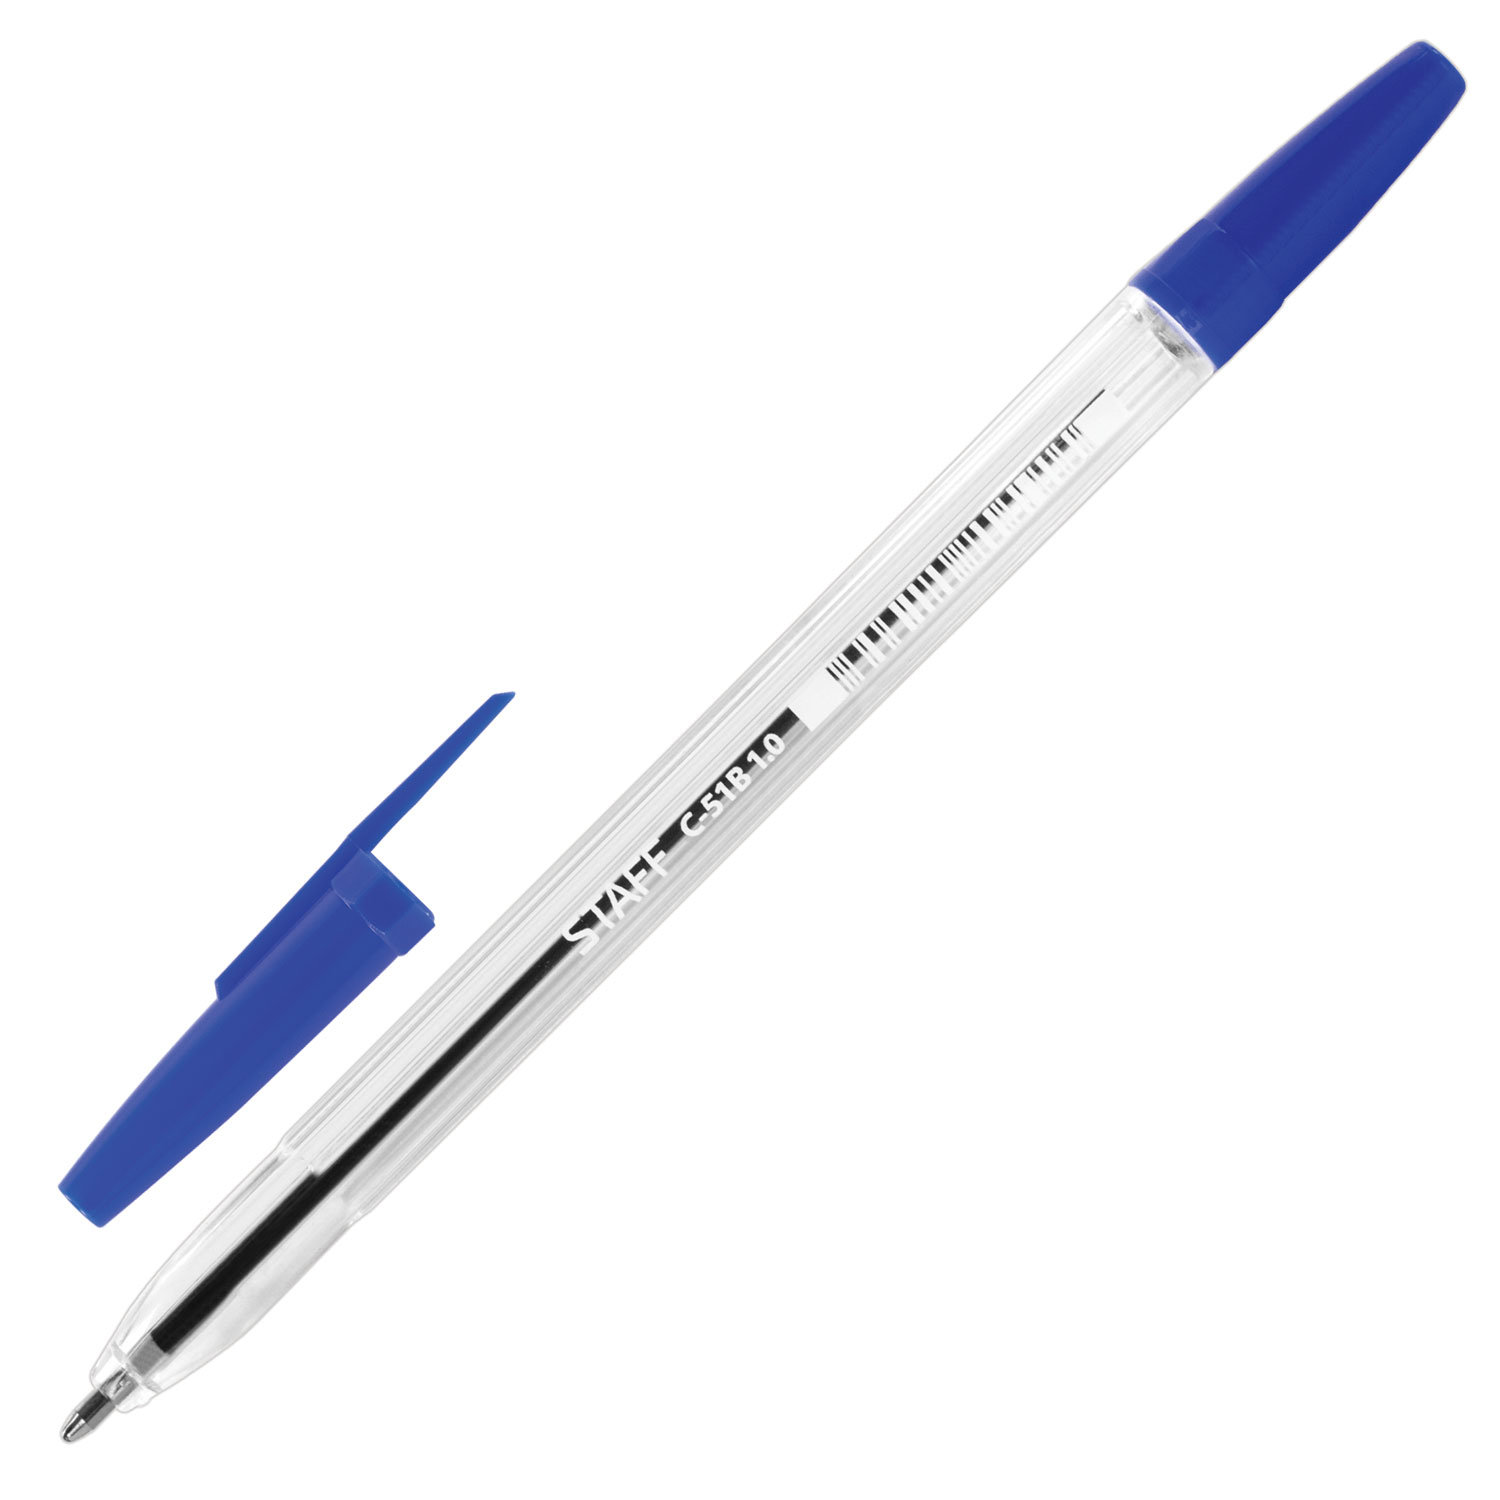 Ручка с прозрачным корпусом. Ручка шариковая staff "c-51 синяя. Ручка шариковая staff c-51", синяя, корпус. Ручка стафф шариковая синяя. Ручка шариковая staff, синяя, корпус прозрачный, узел 1 мм,.